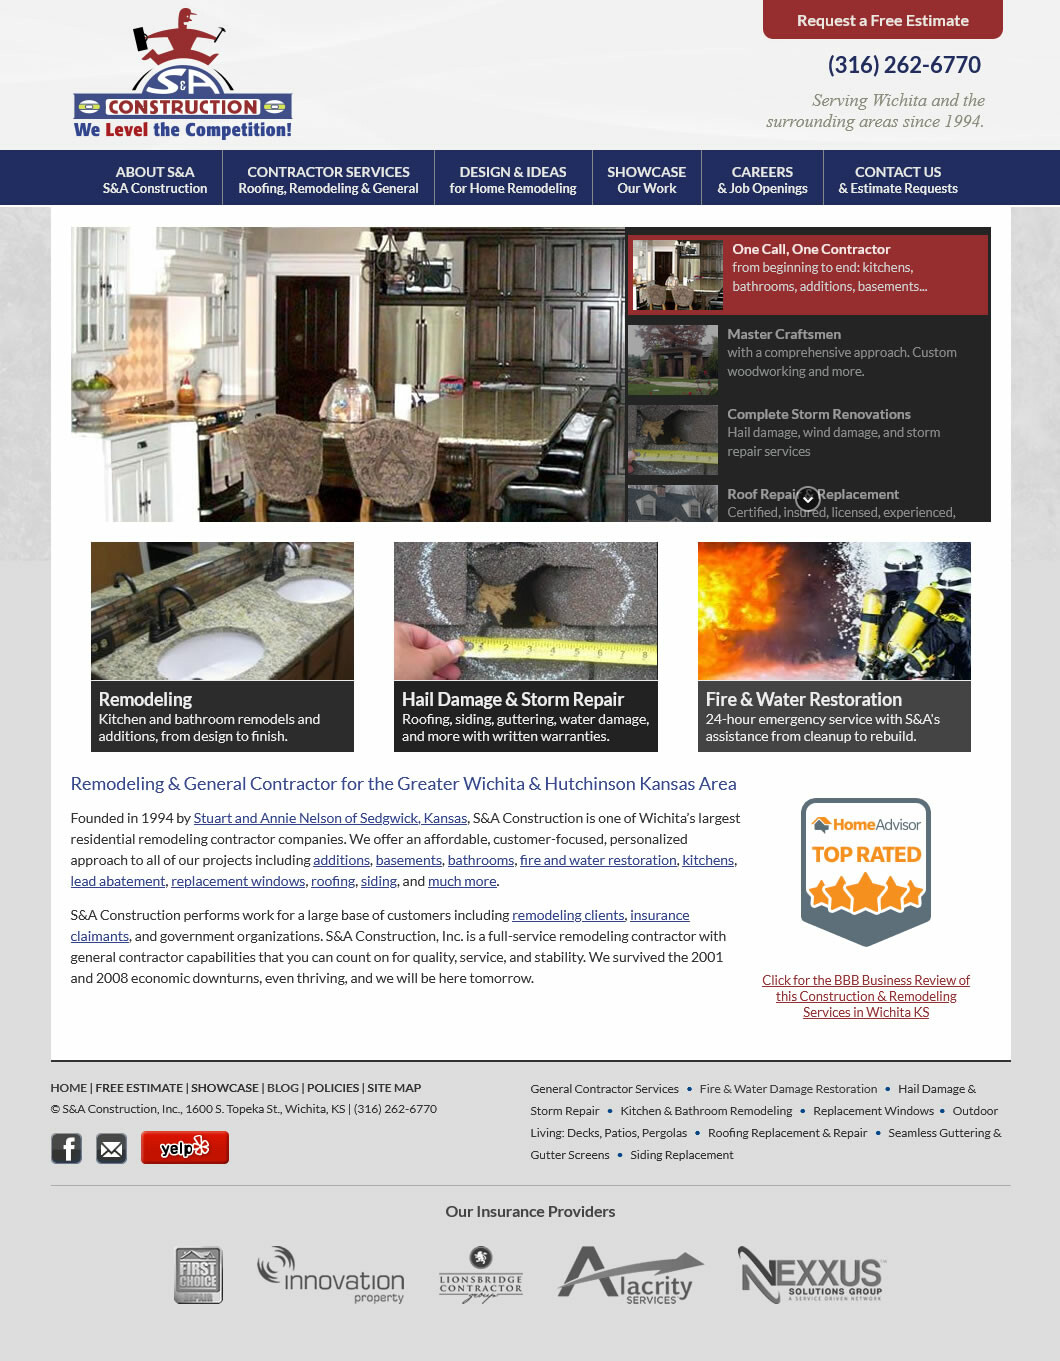 S&A Construction website screenshot